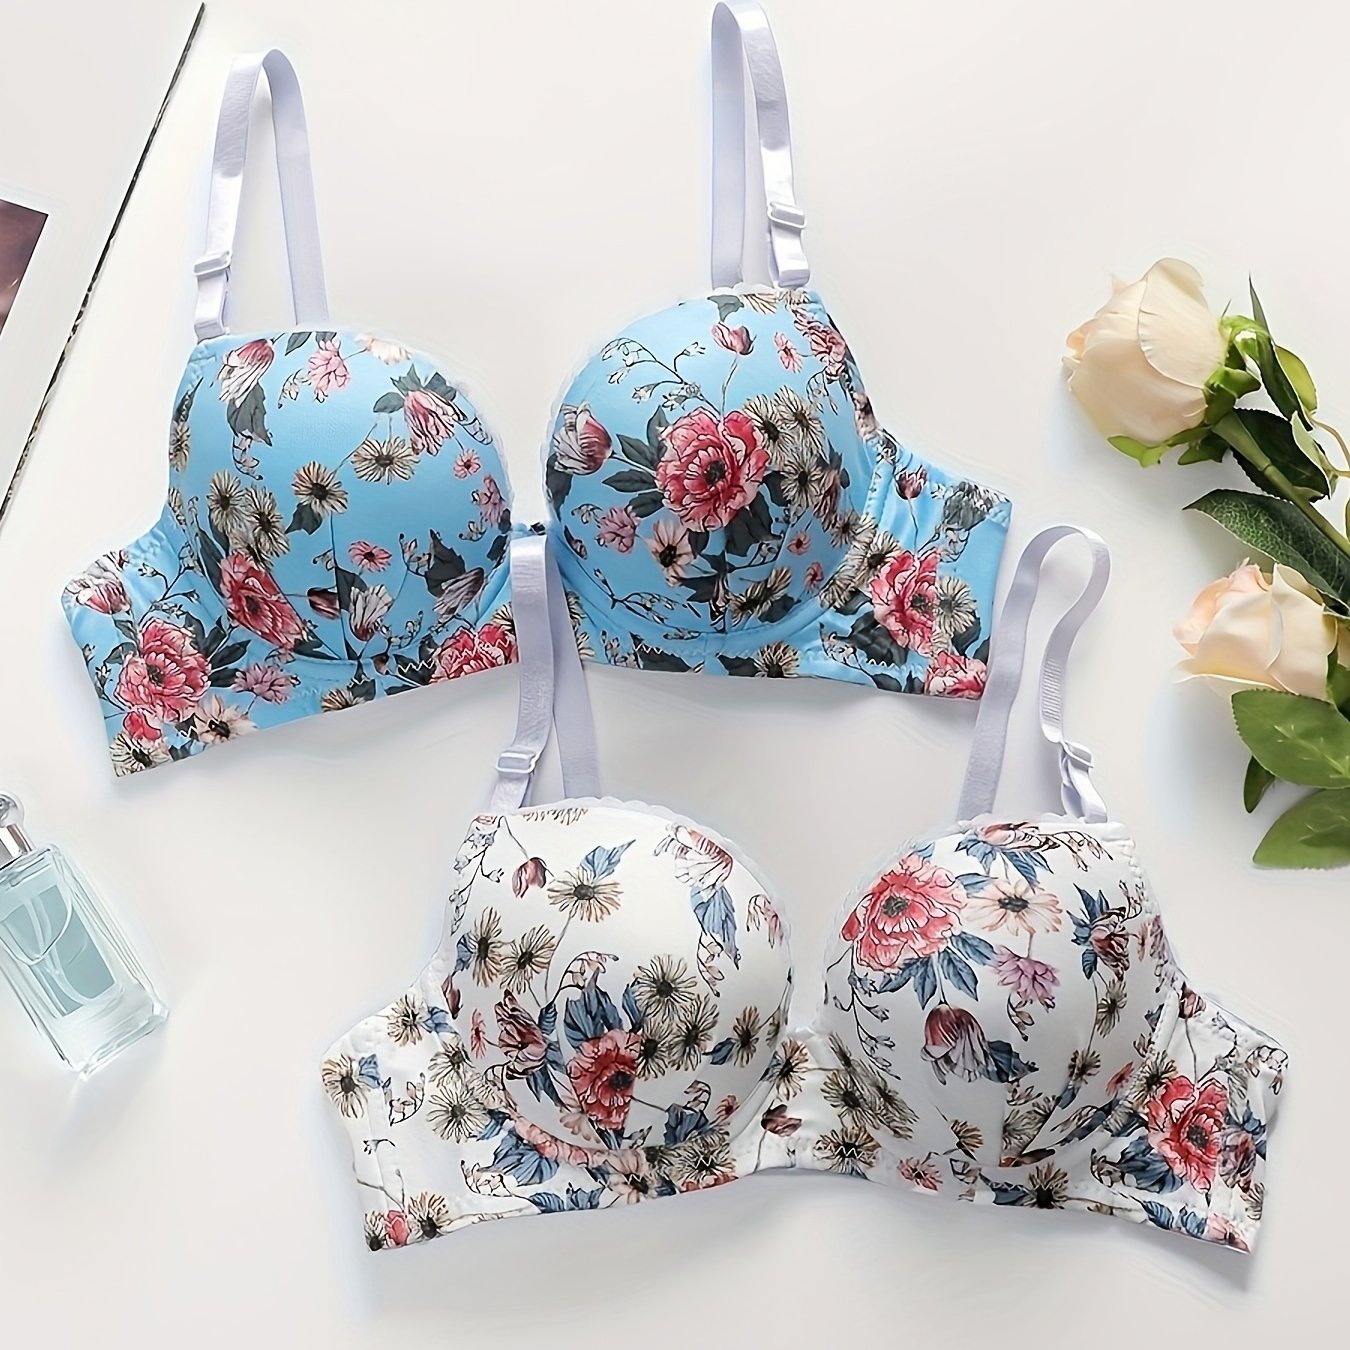 Bralette Push Up Bras for Women Underwear Vintage Floral Print